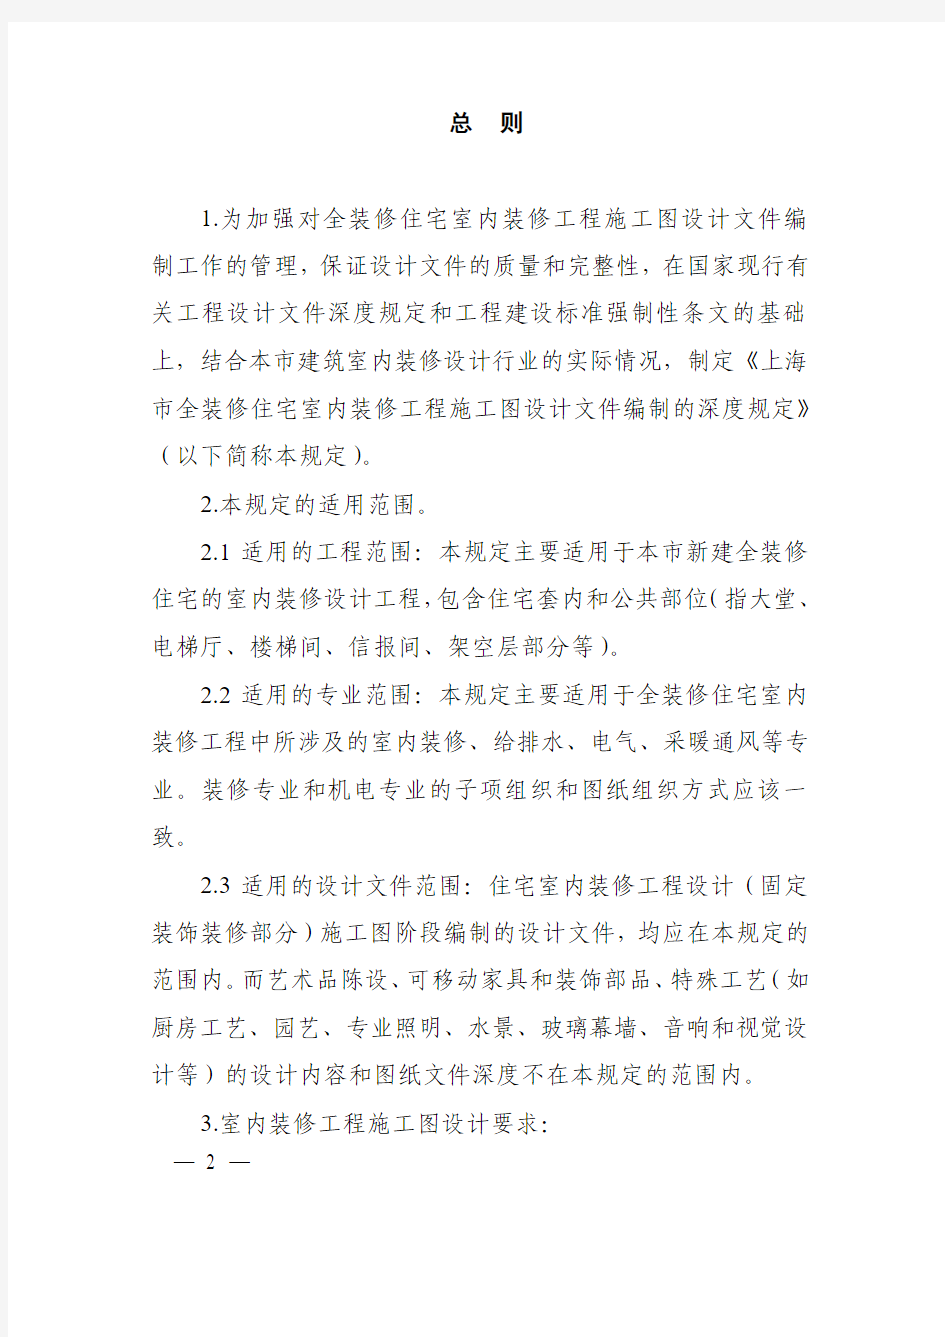 上海市全装修住宅室内装修工程施工图设计文件编制深度规定